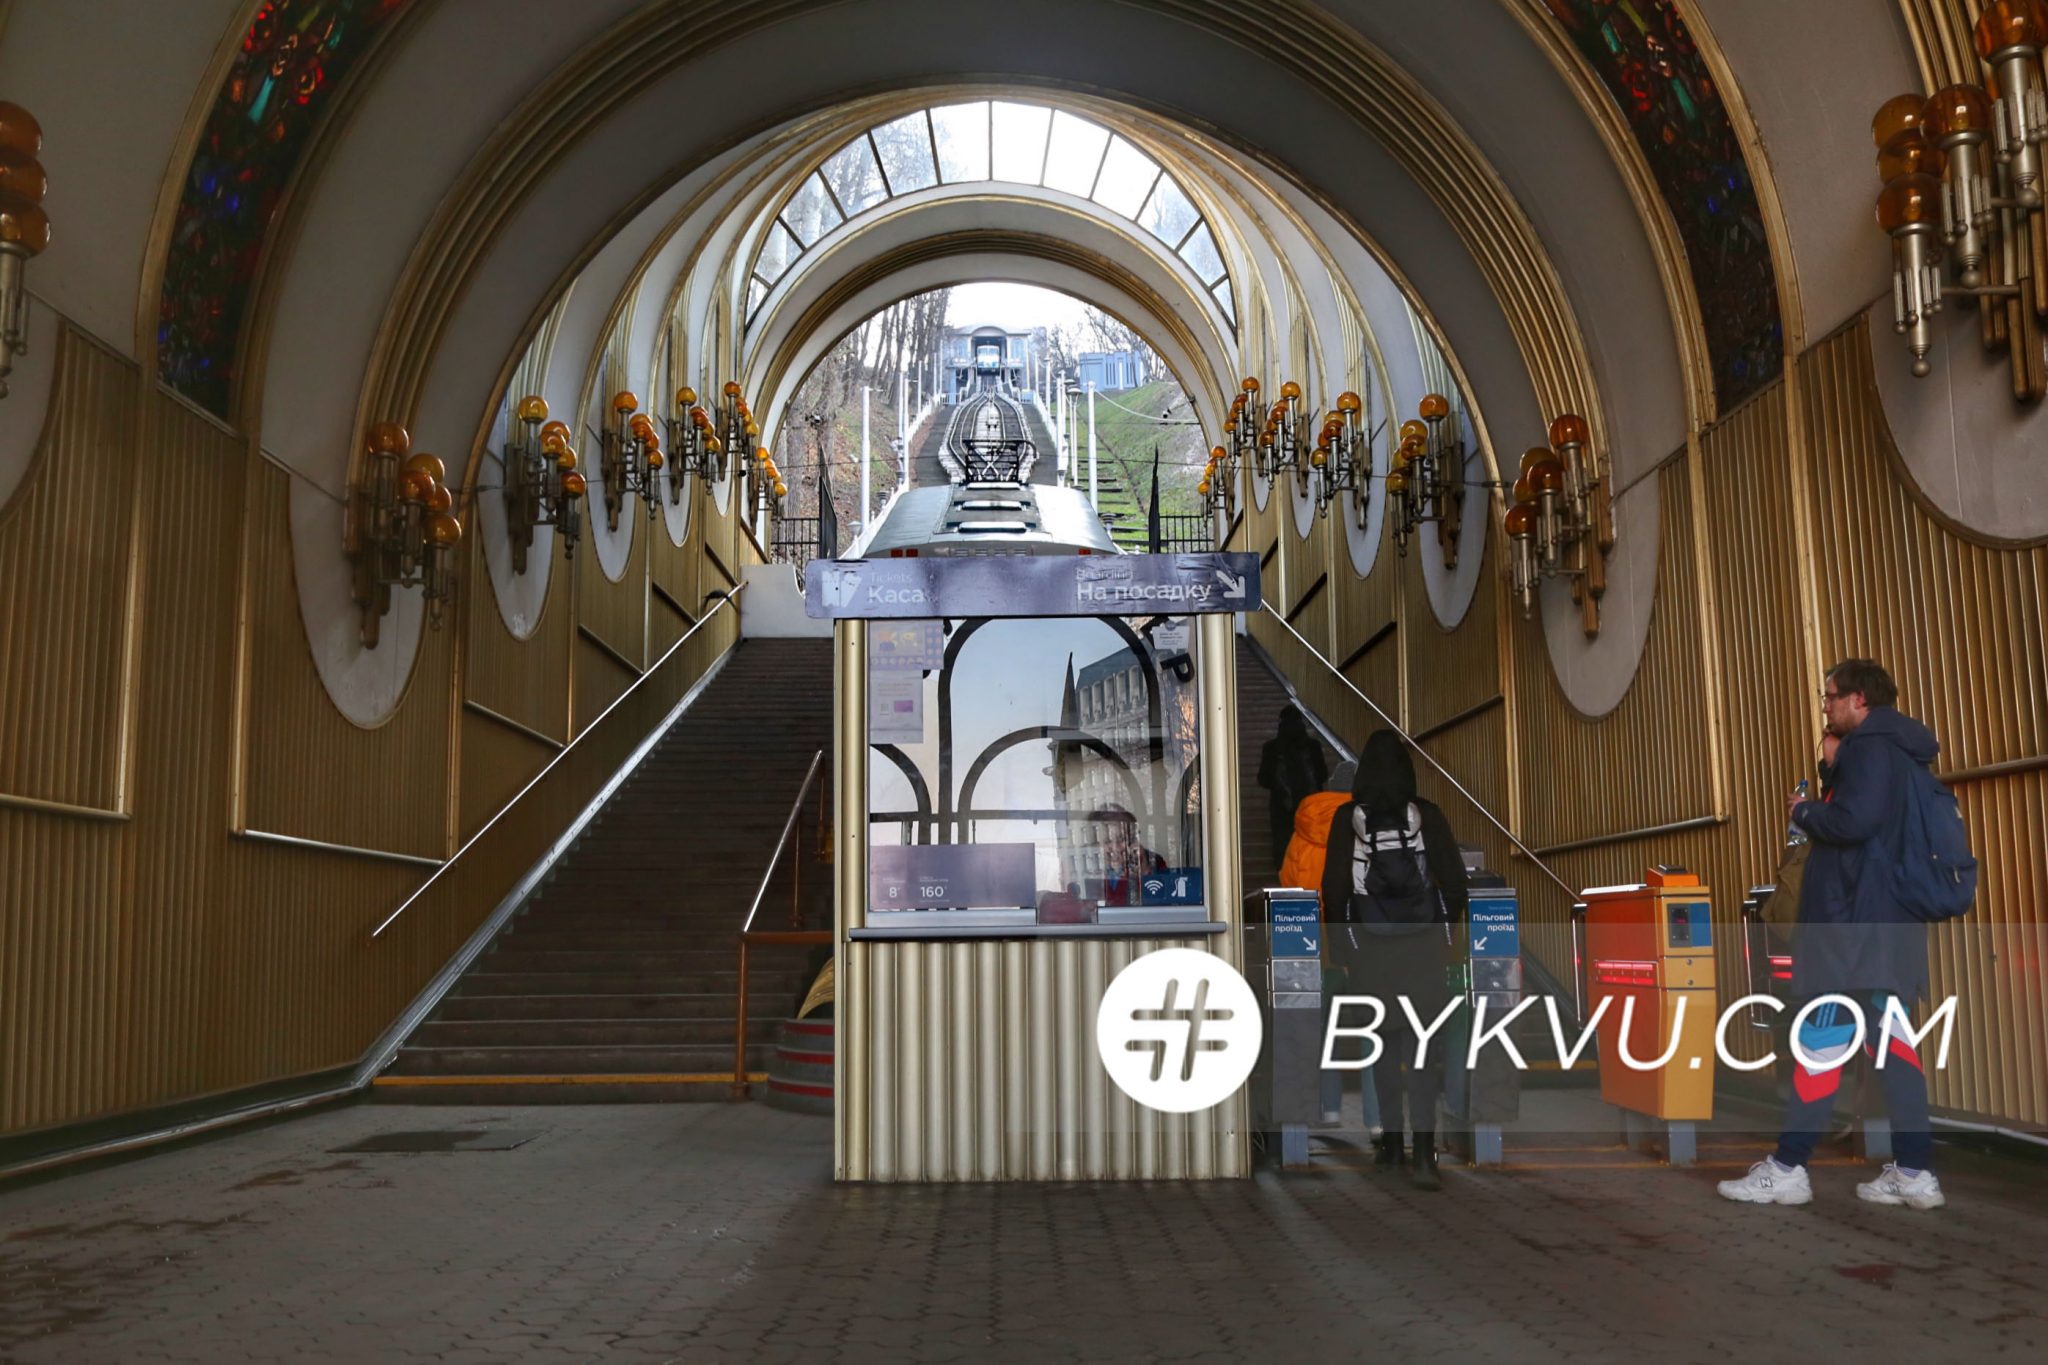 Киев_метро_карантин_маршрутки